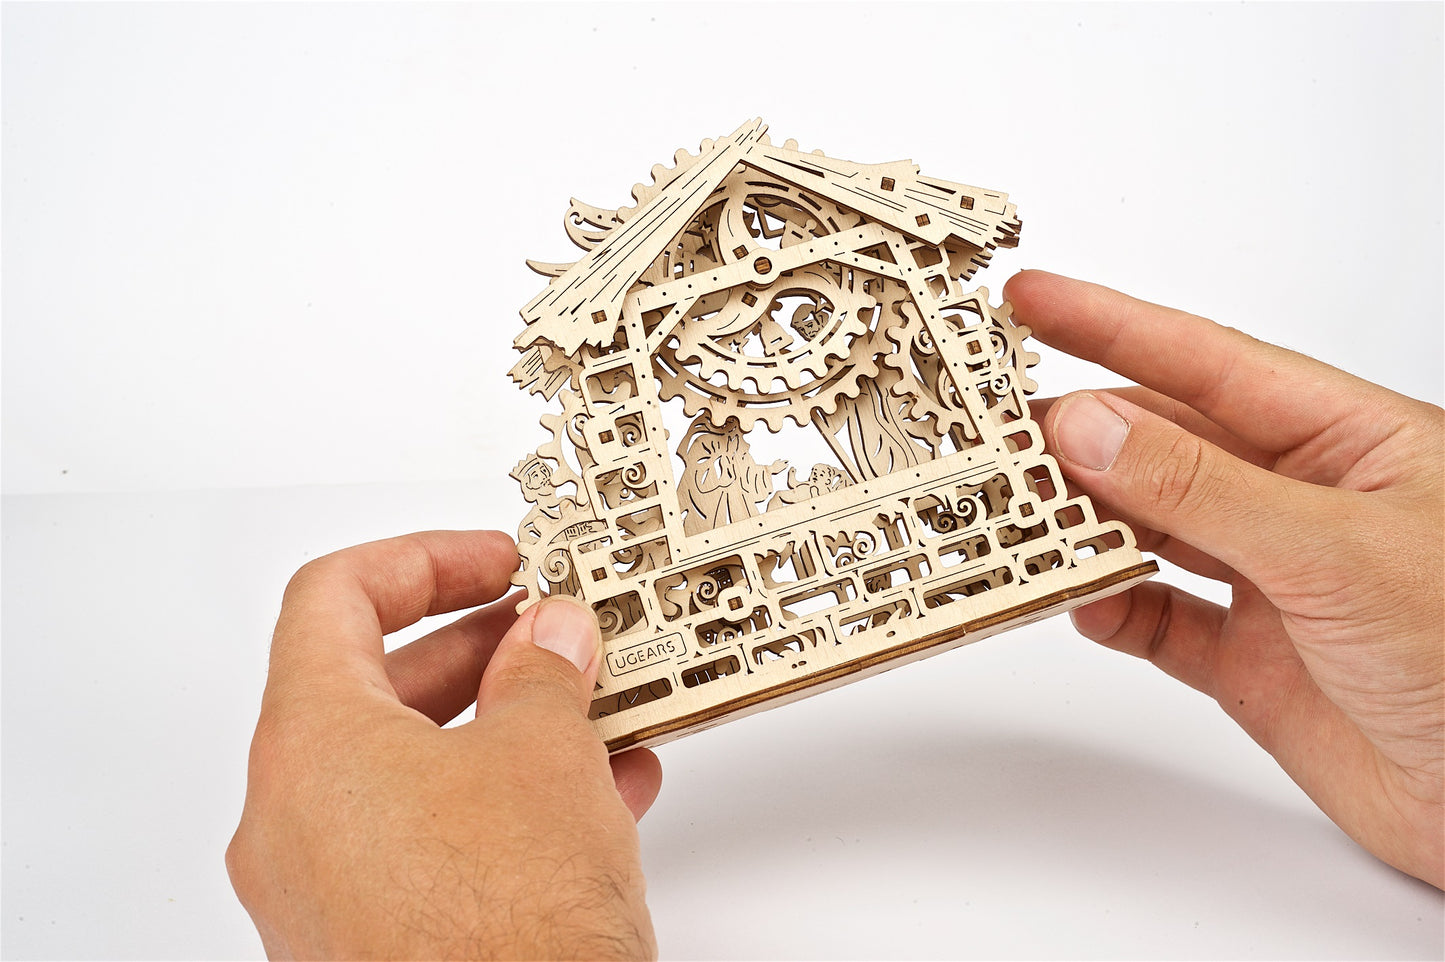 houten 3D puzzel kerststal - puzzle 3D en bois crèche de noël